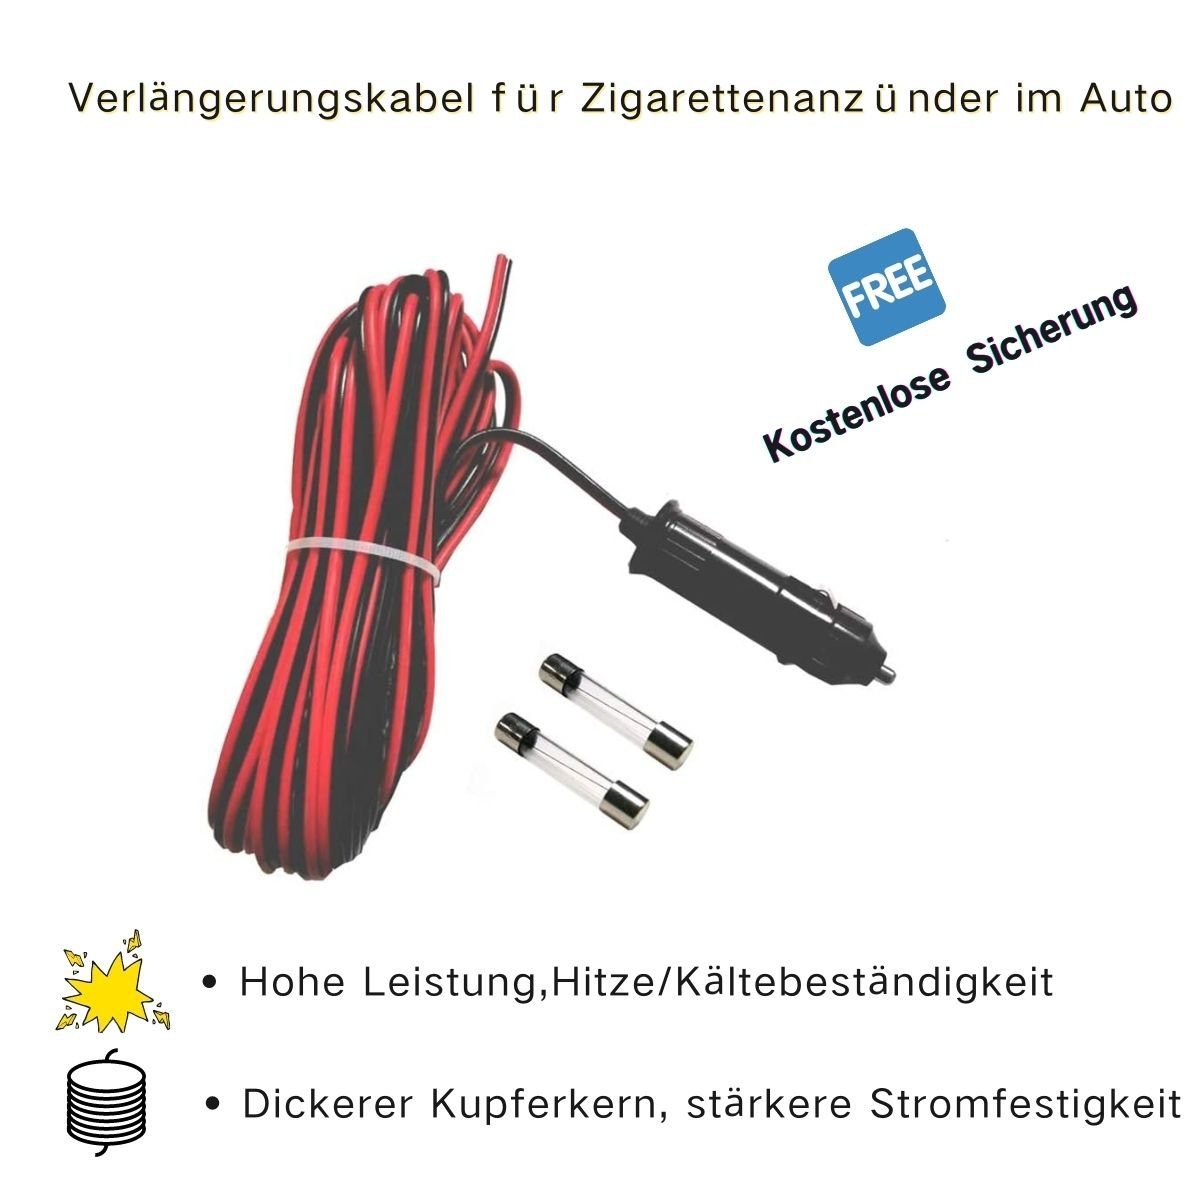 12V KFZ - Auto Zigarettenanzünder Stecker mit Sicherung